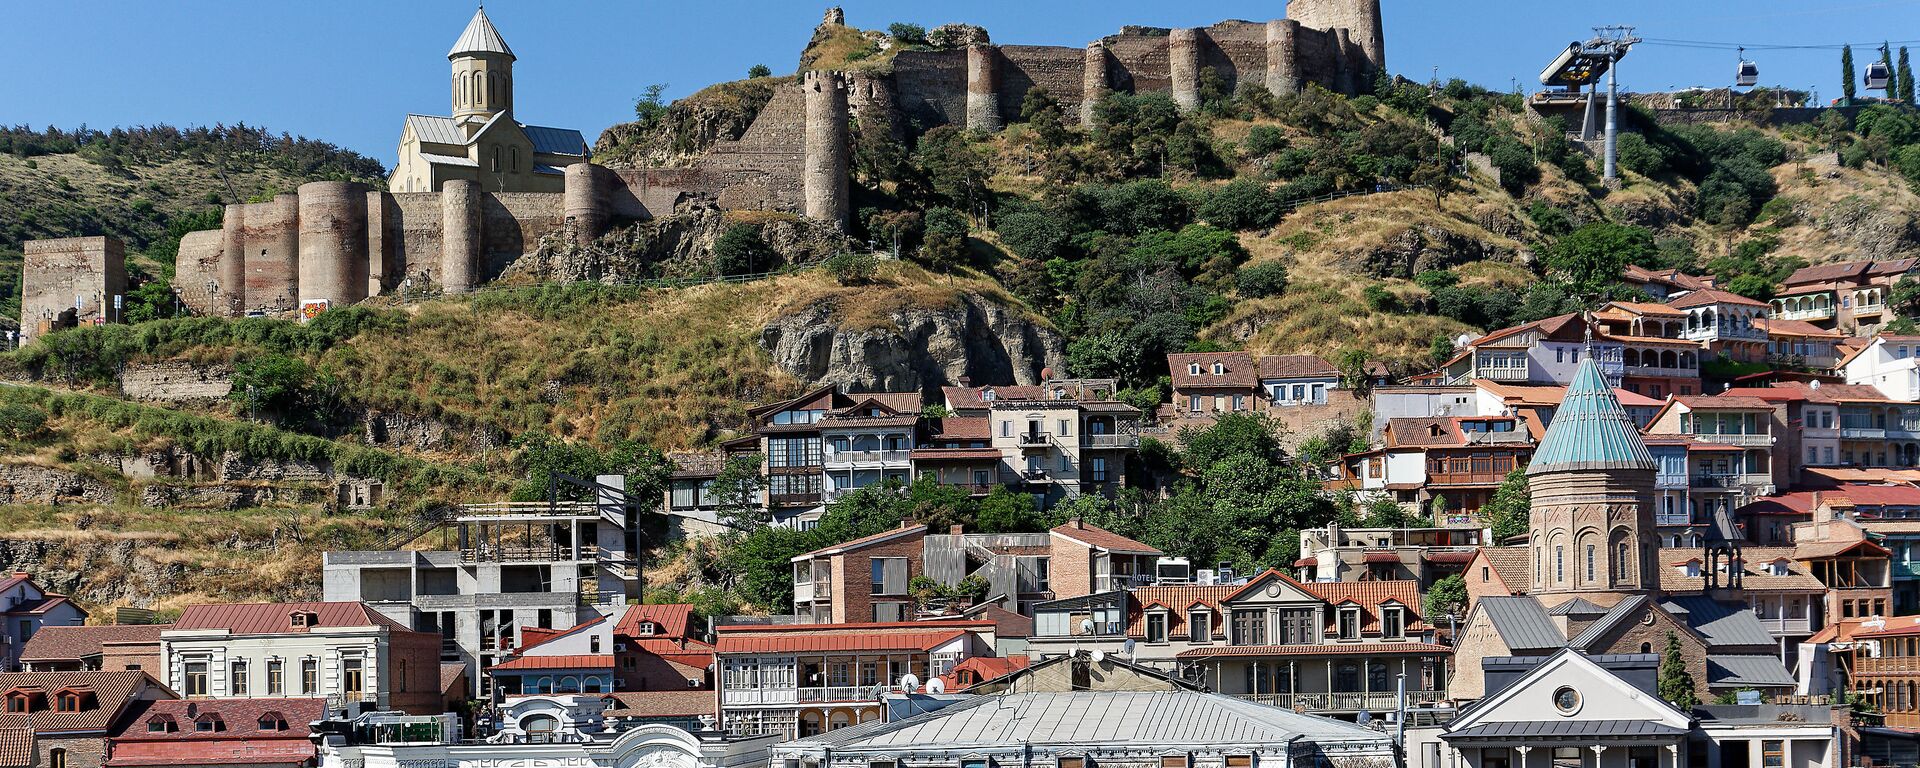 Вид на город Тбилиси - старый город, крепость Нарикала и Калаубани, церкви армянская и грузинская - Sputnik Грузия, 1920, 19.09.2021